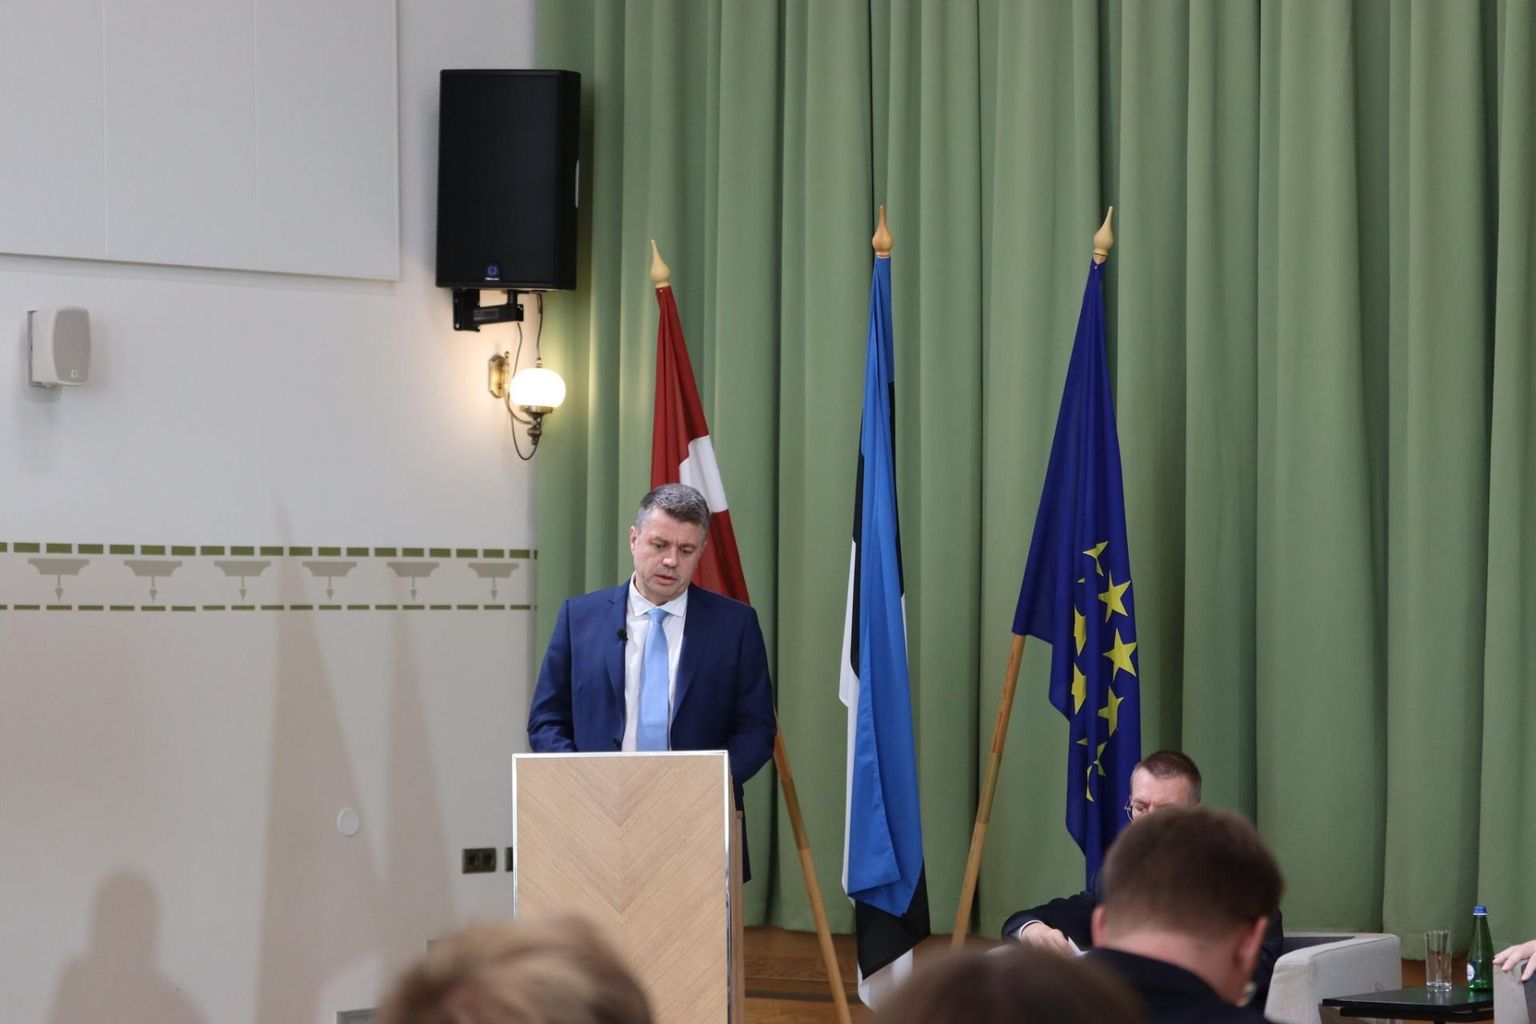 Kõnepuldis on Eesti välisminister Urmas Reinsalu.